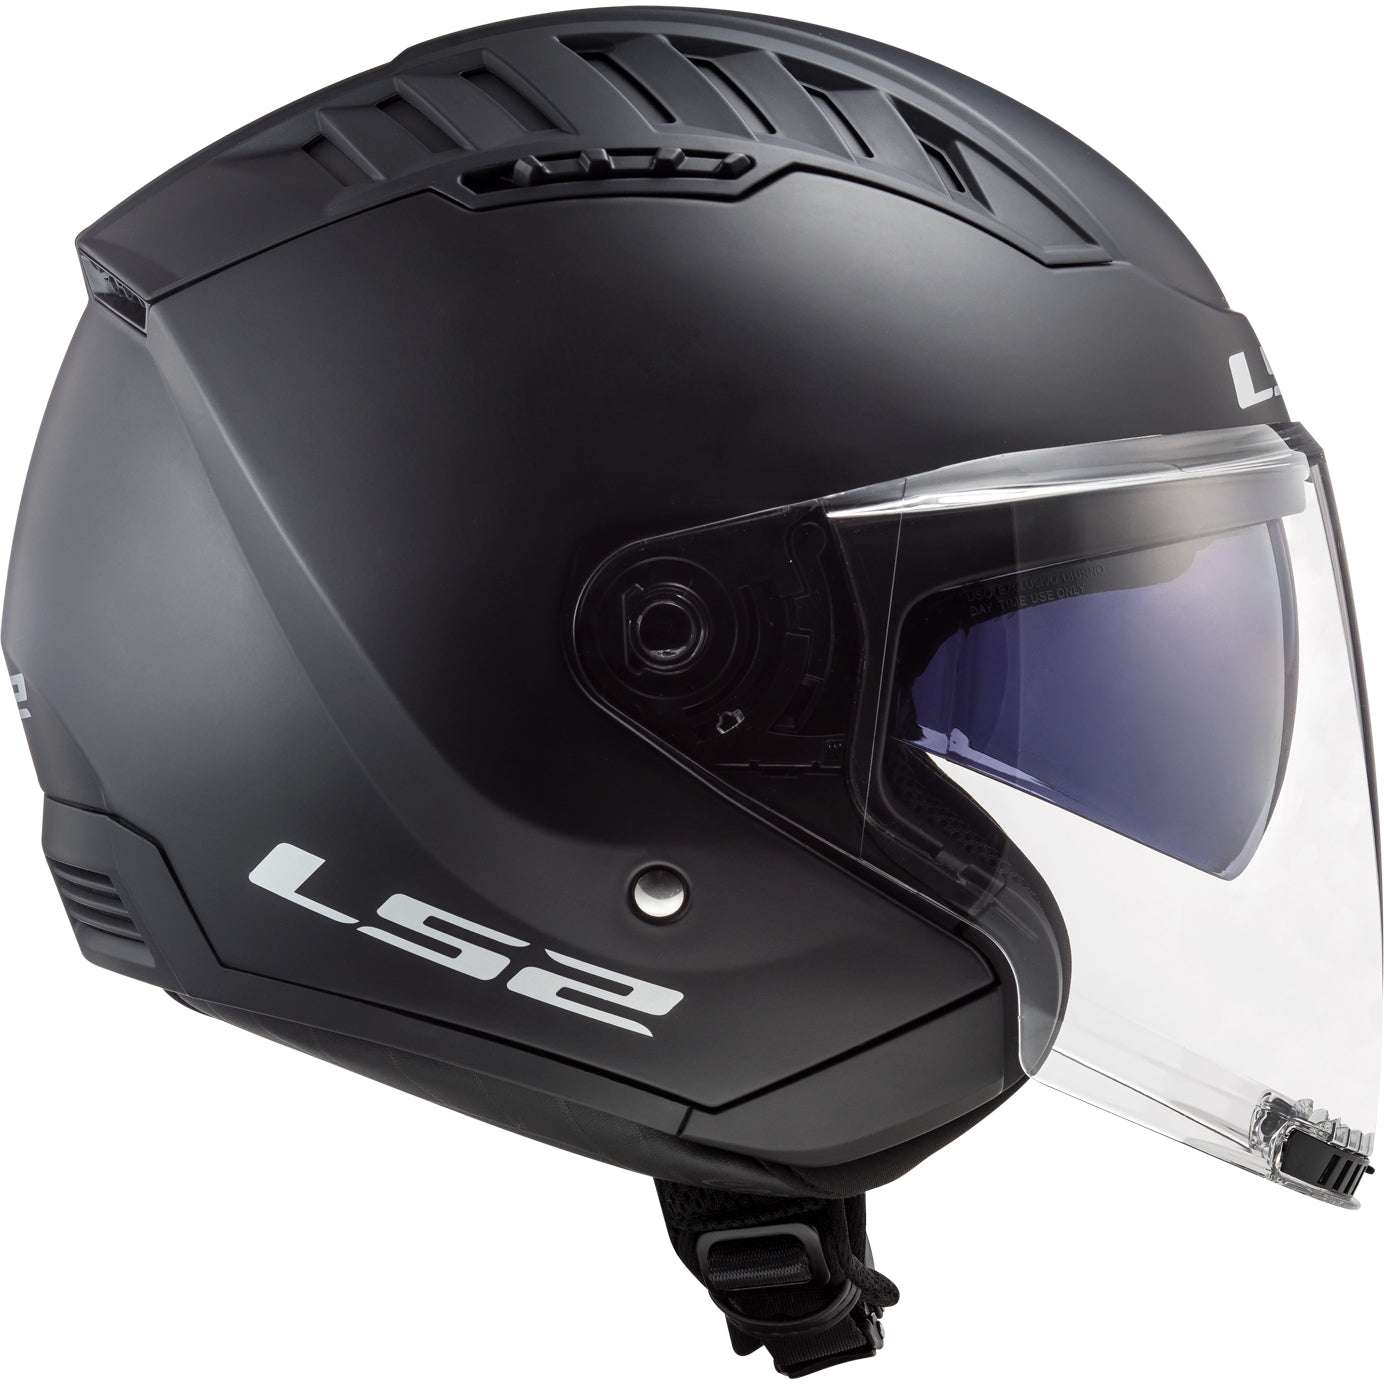 LS2 Helmets Copter Solid Motorcycle Open Face & 3/4 Helmet